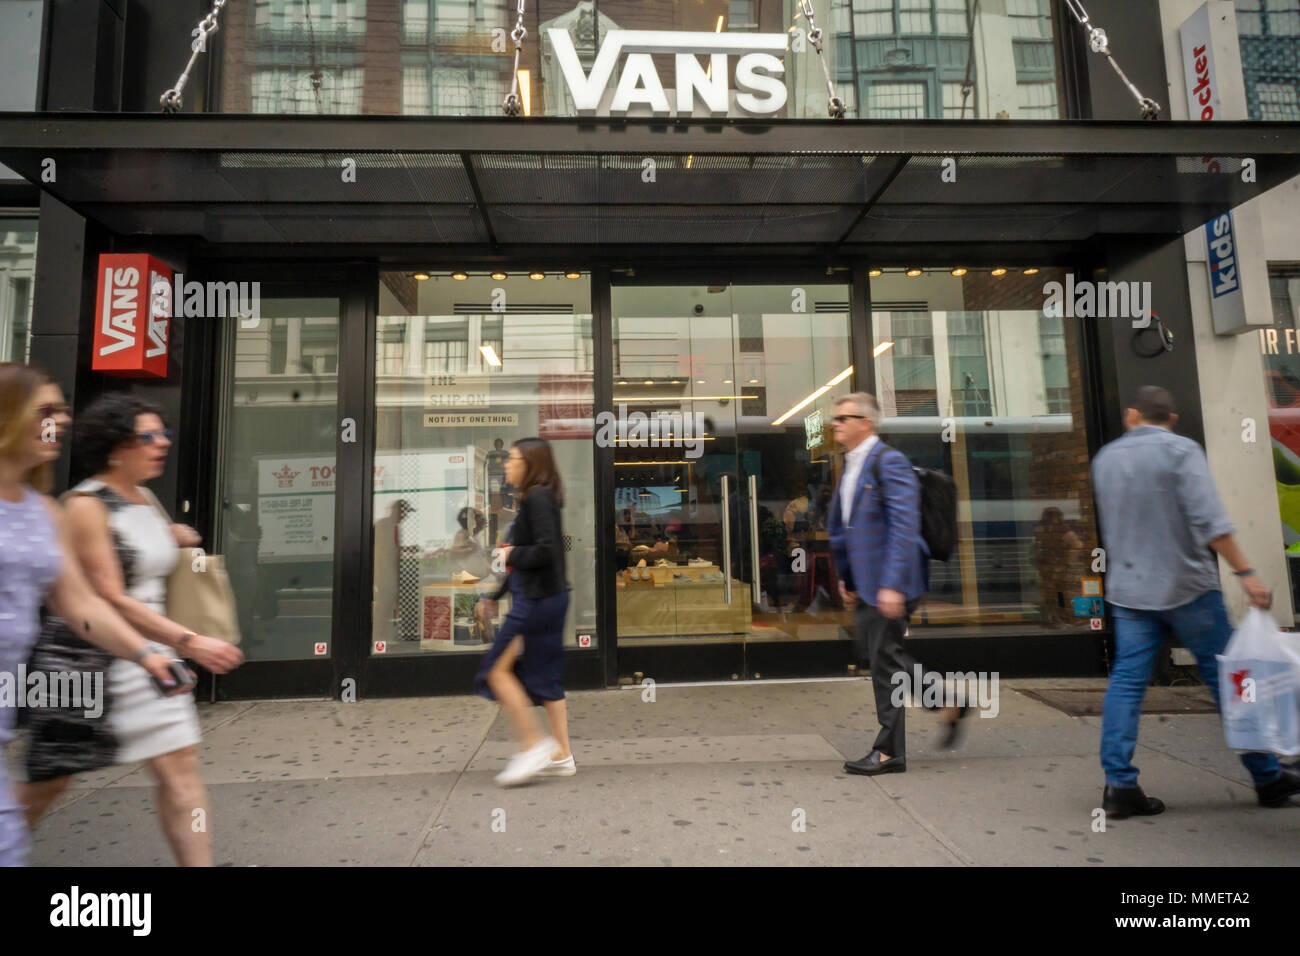 vans store in new york